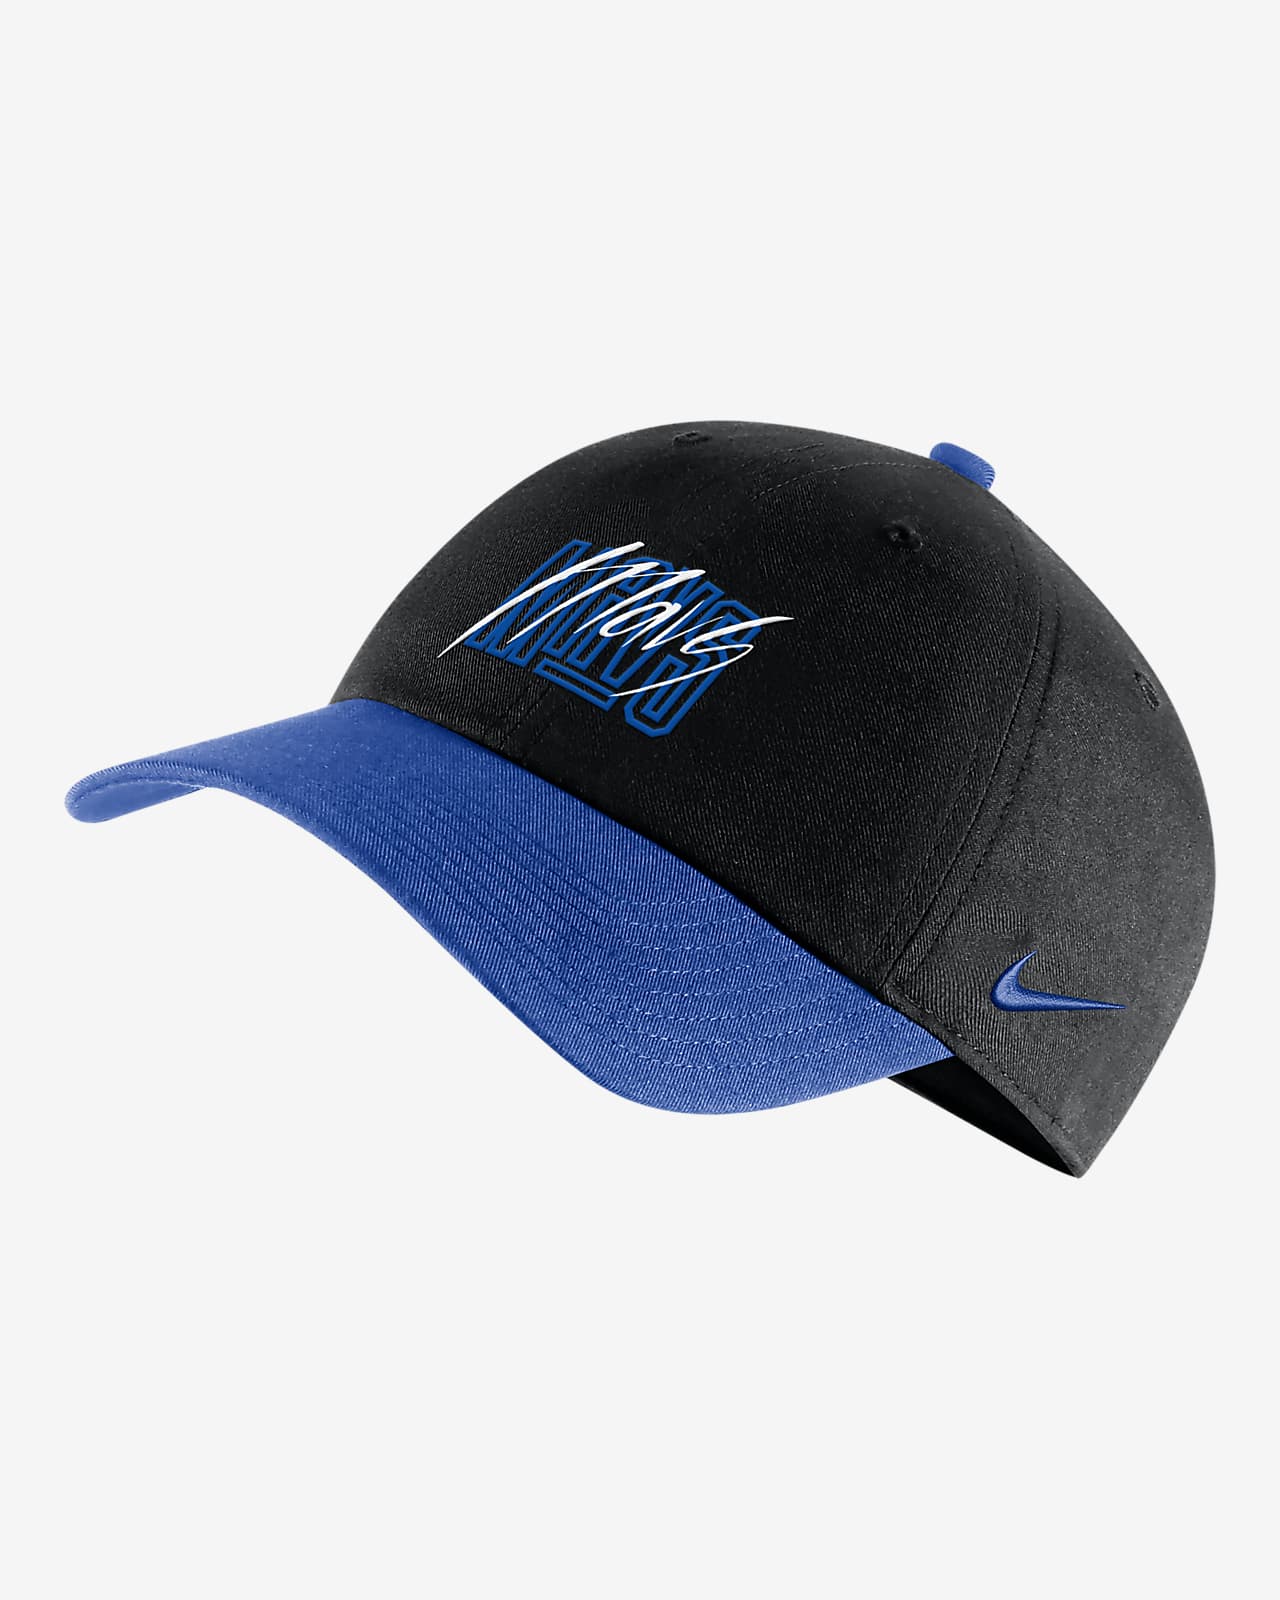 Dallas Mavericks Heritage86 Nike NBA Adjustable Hat